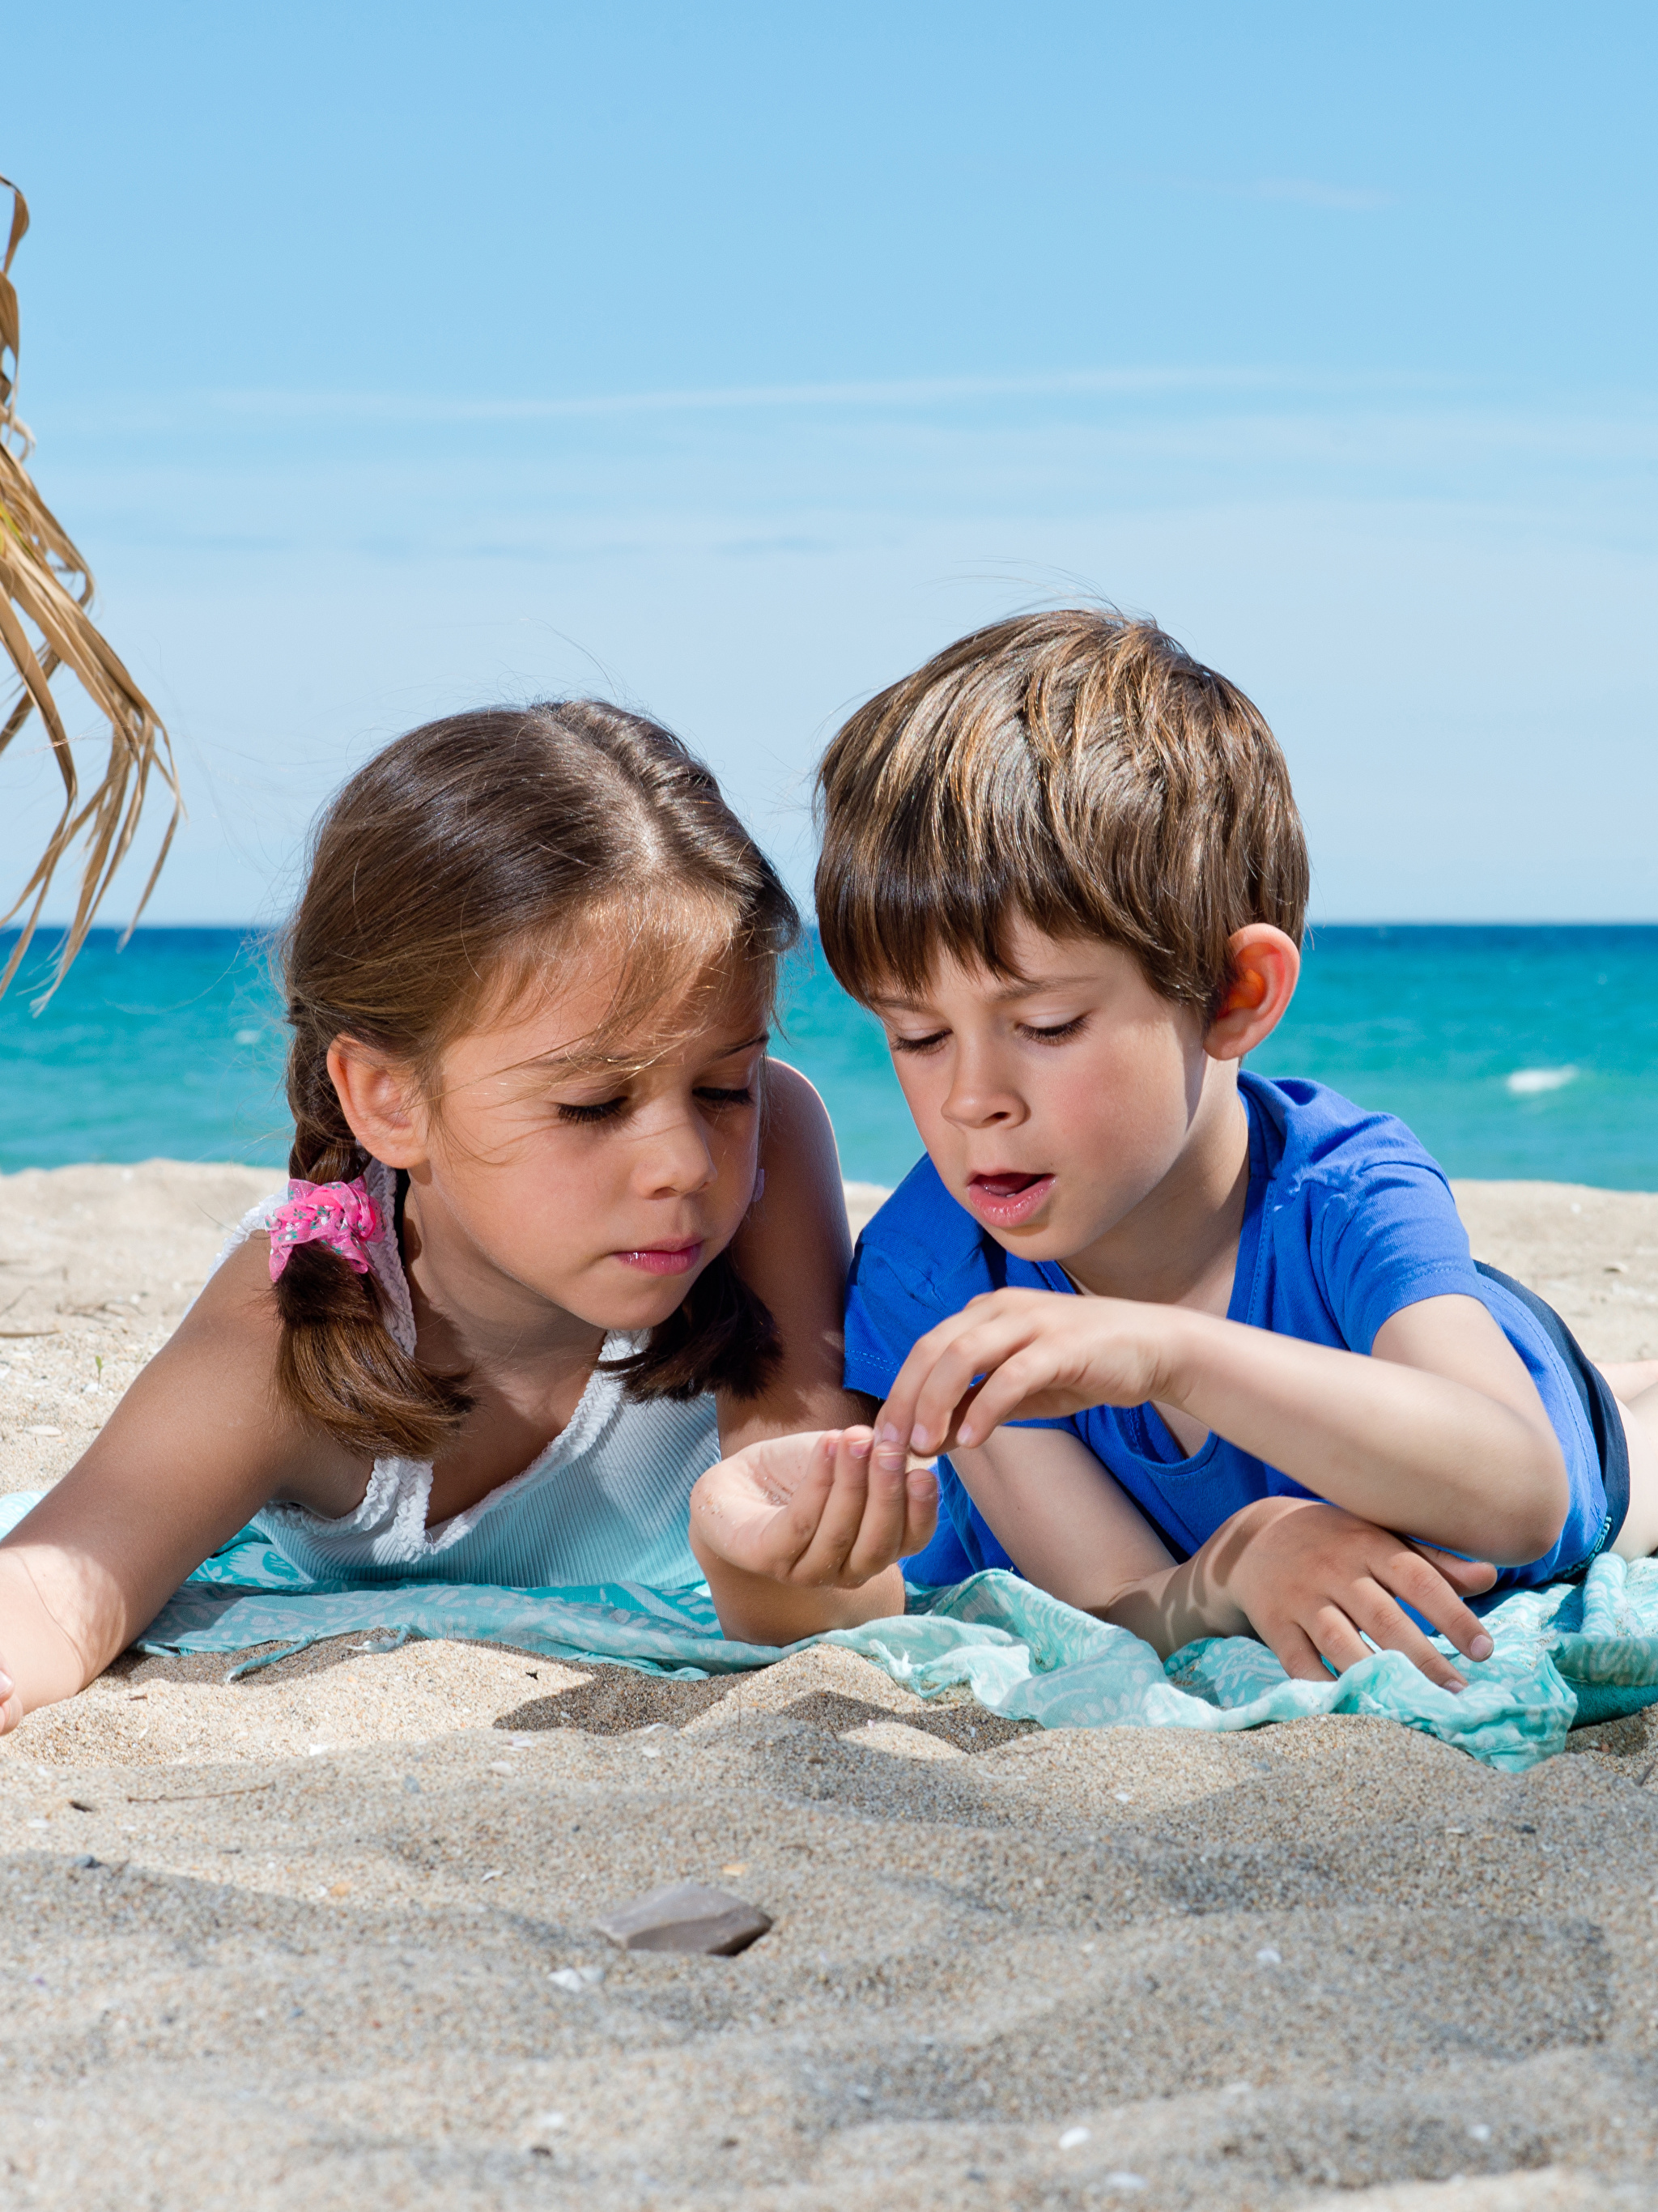 Purenudism pictures. Дети на море. Детский пляж. Девочка на море. Турция дети пляж.